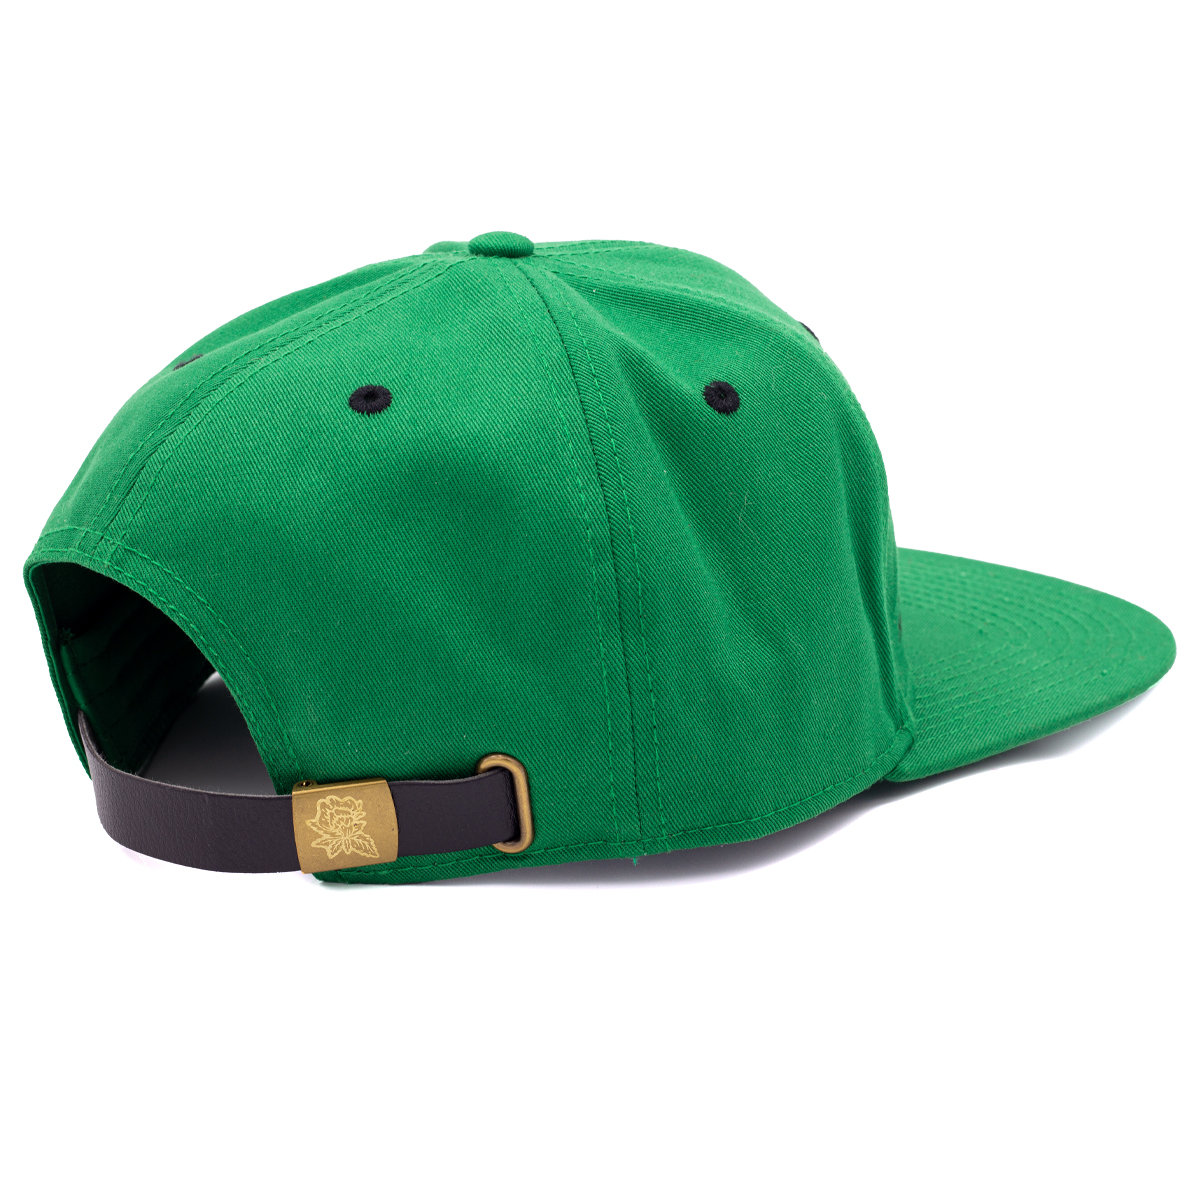 Snapdragon Strap-Back Hats - Snapdragon Hemp